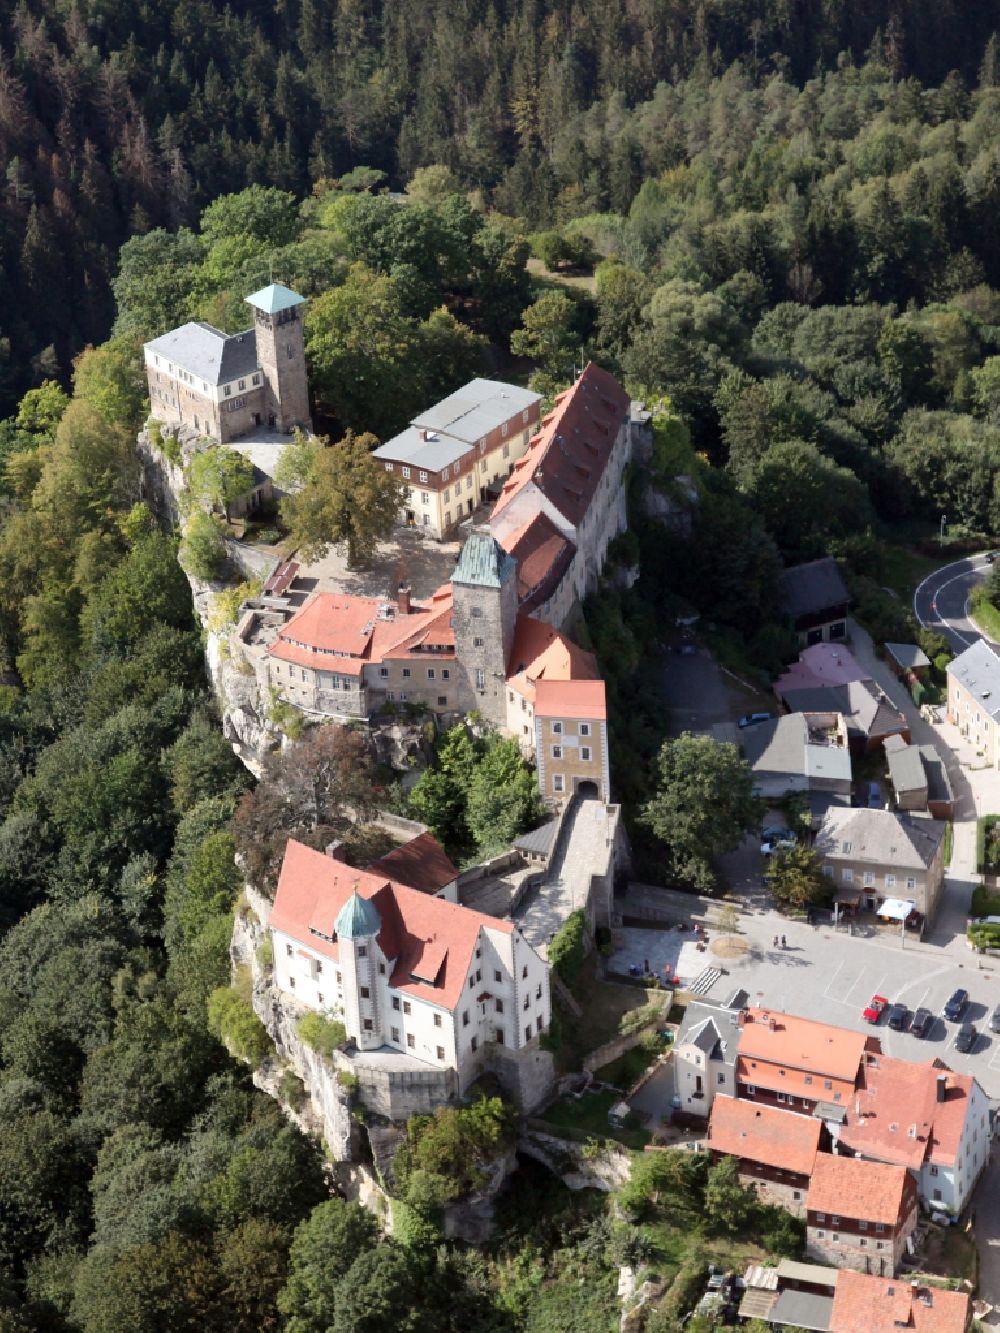 Luftbild Hohnstein - Burganlage des Schloss Burg Hohnstein in Hohnstein im Bundesland Sachsen, Deutschland